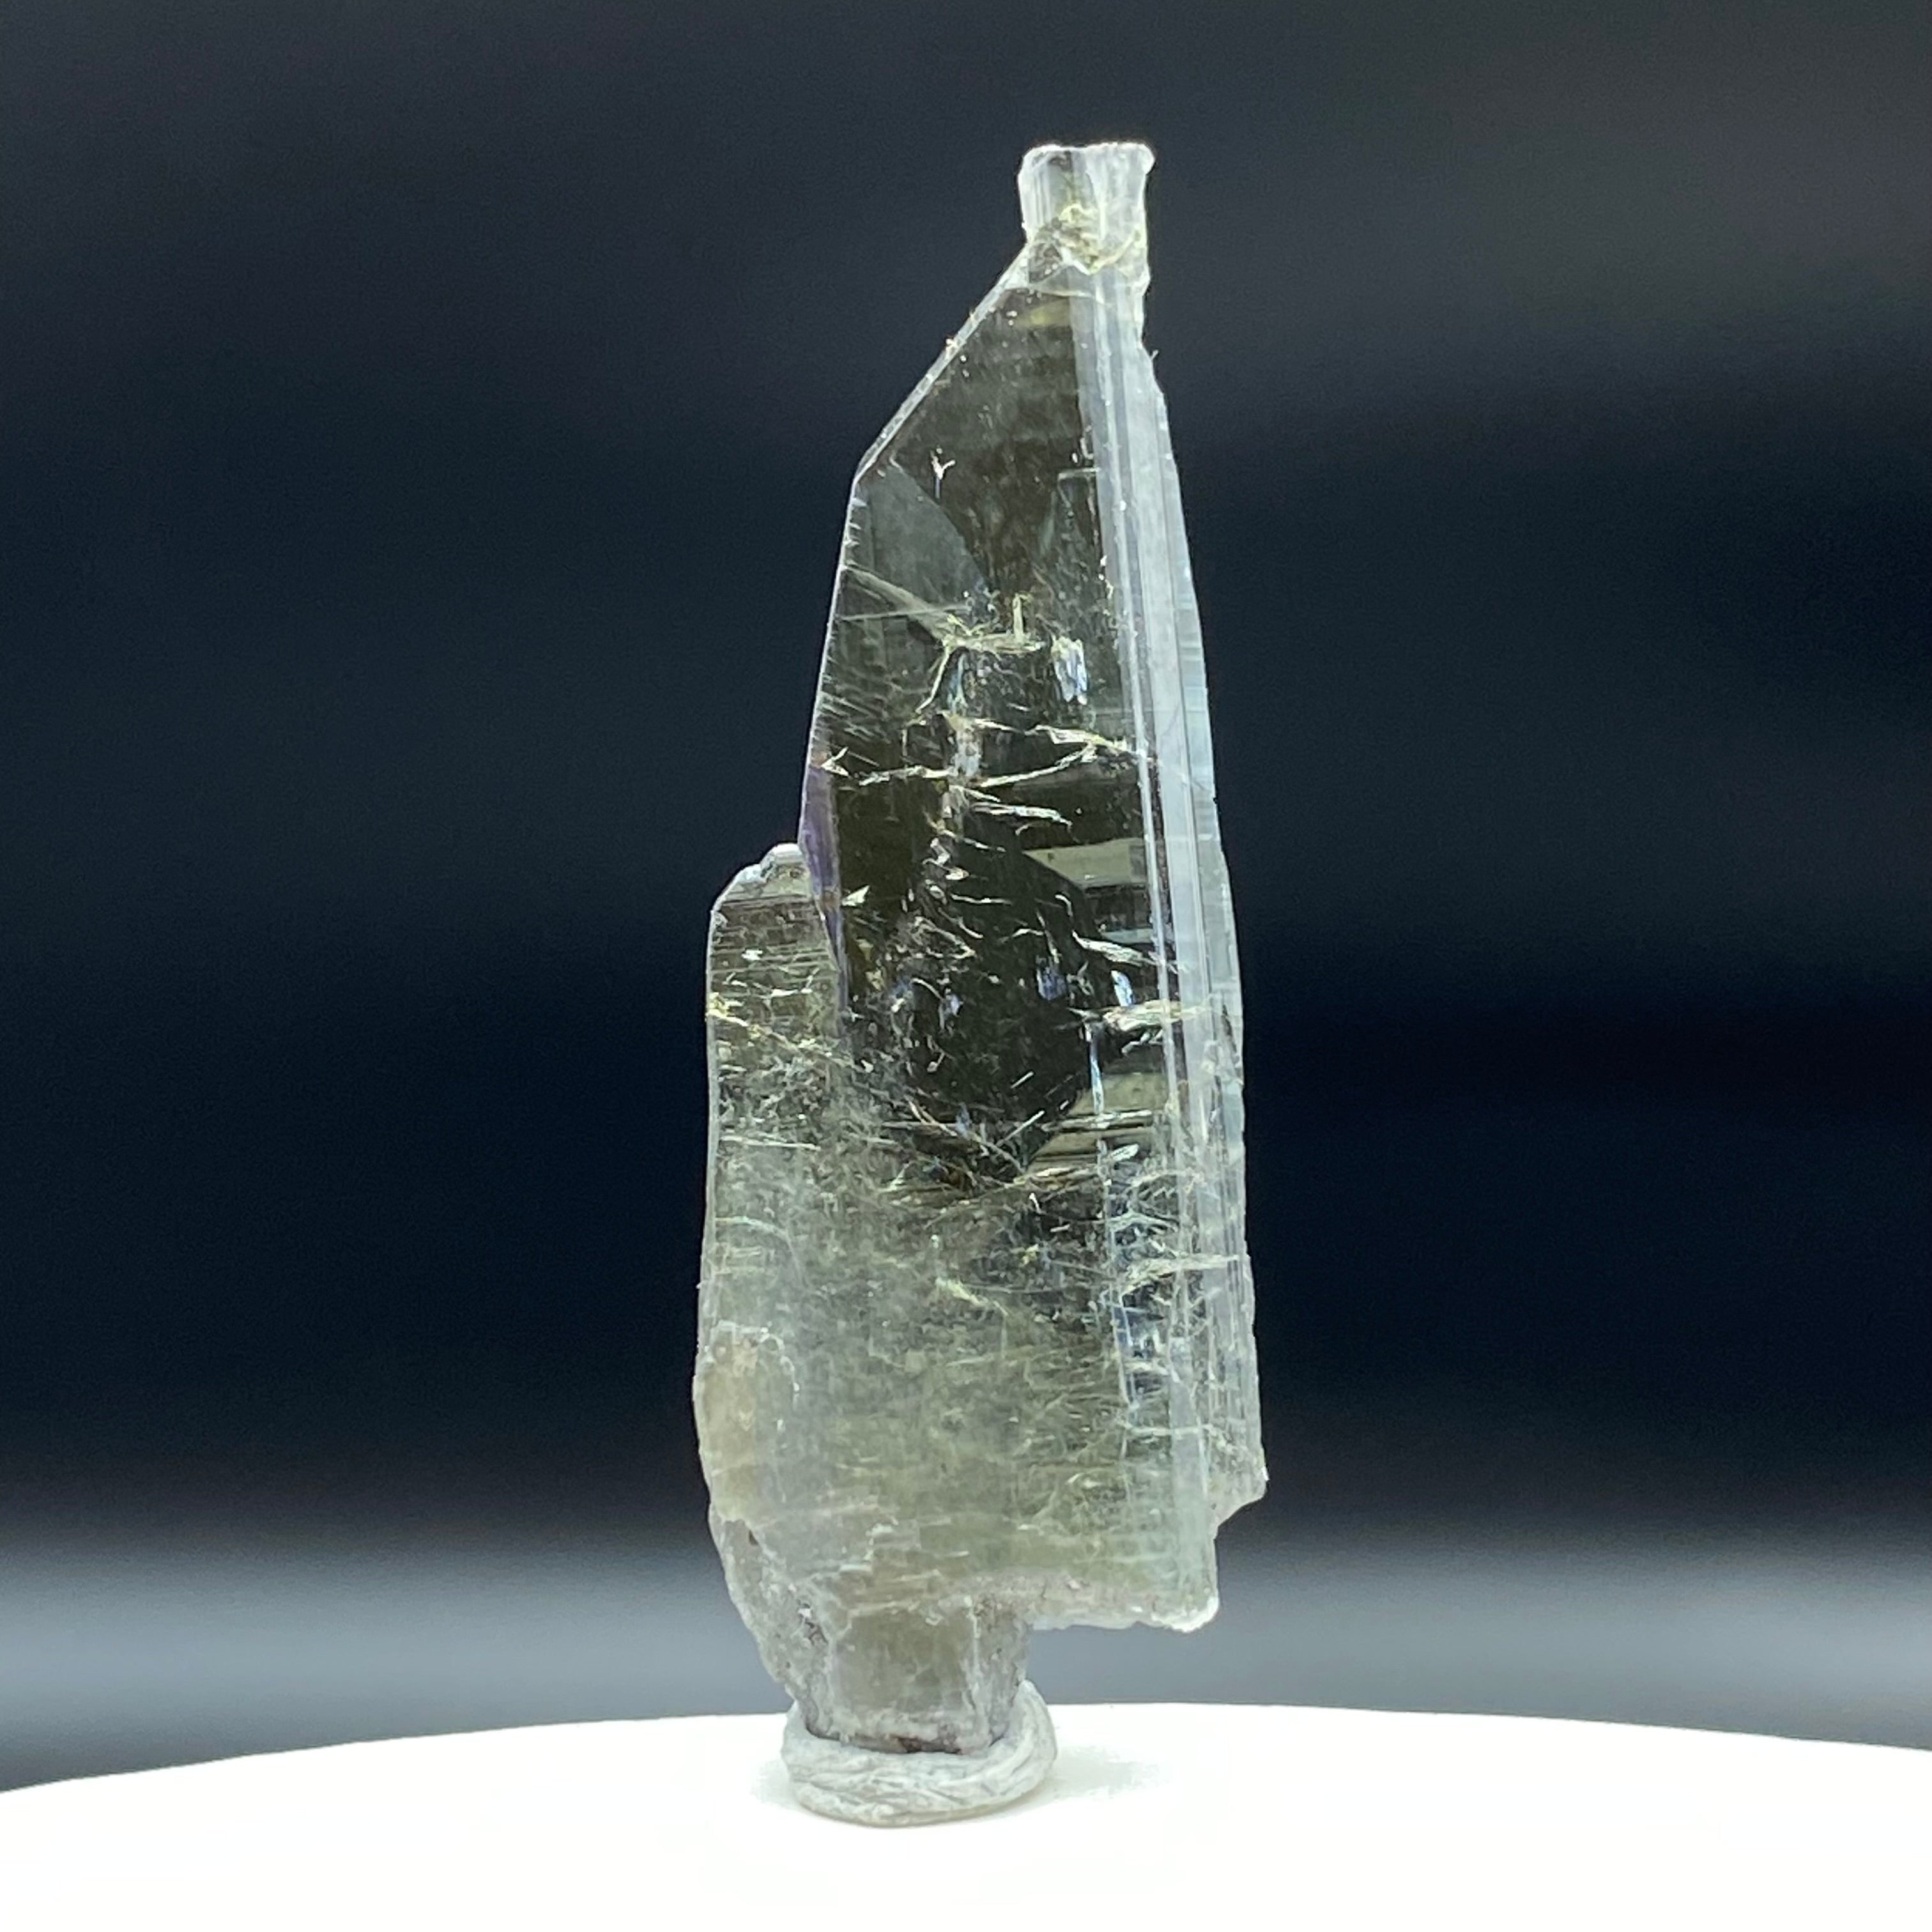 Real Tanzanite Crystal - 016